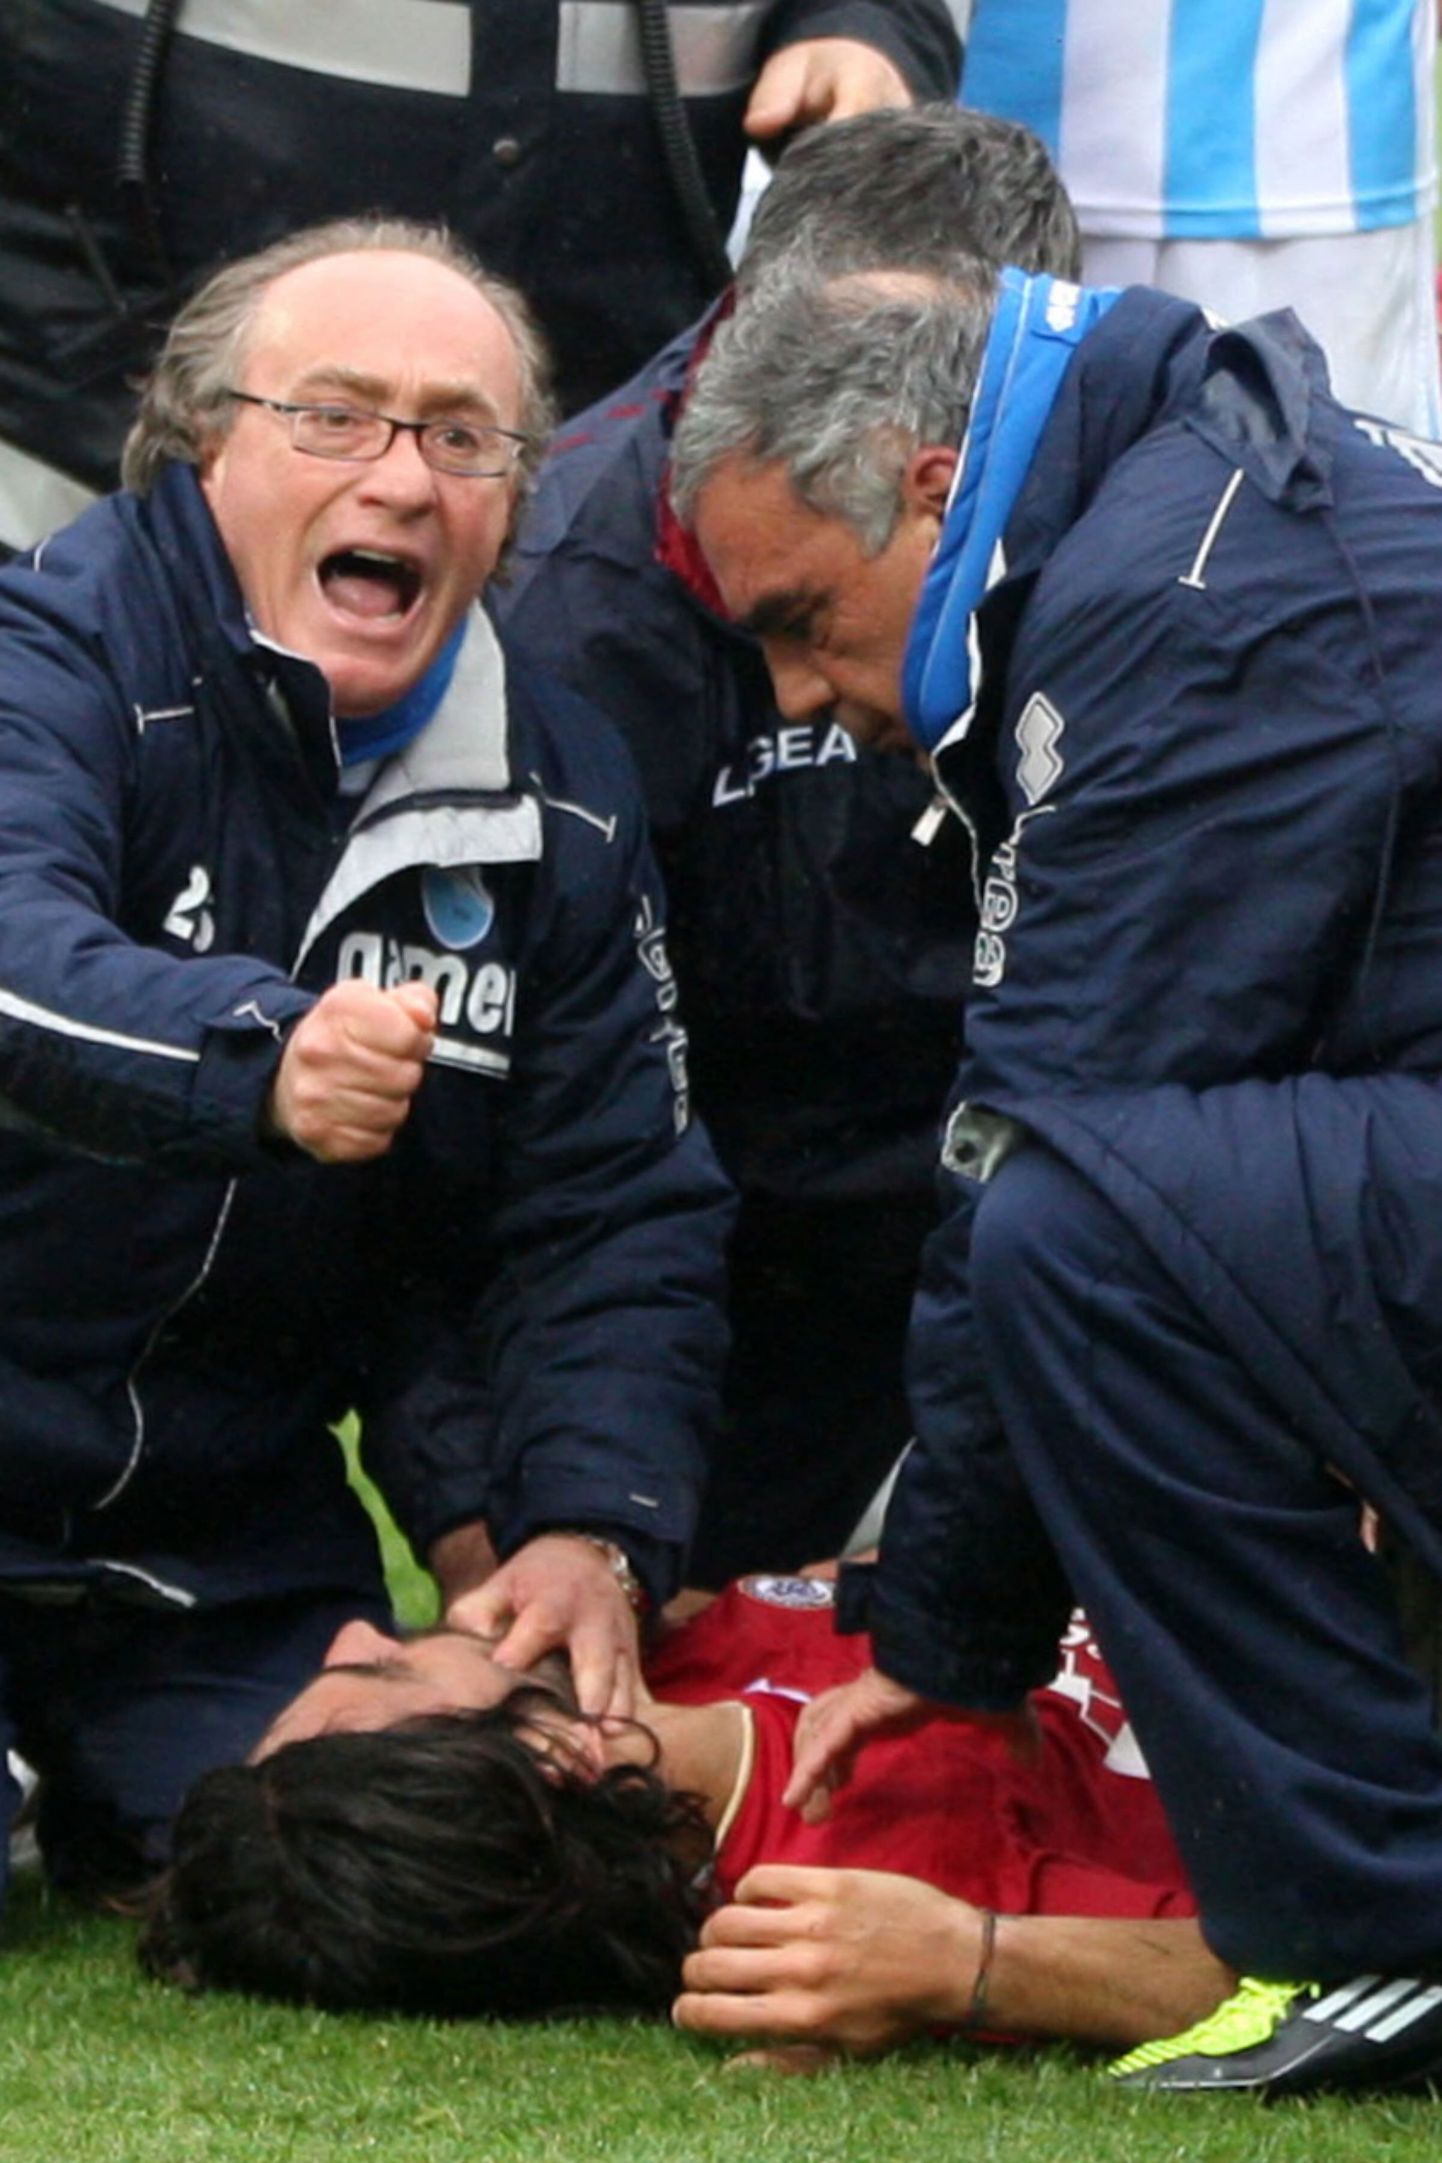 Врачи пытаются помощь полузащитнику футбольного клуба "Ливороно" Пьермарио Моросини, чье сердце остановилось во время матча в апреле 2012 года. 25-летний Моросини умер по дороге в больницу.